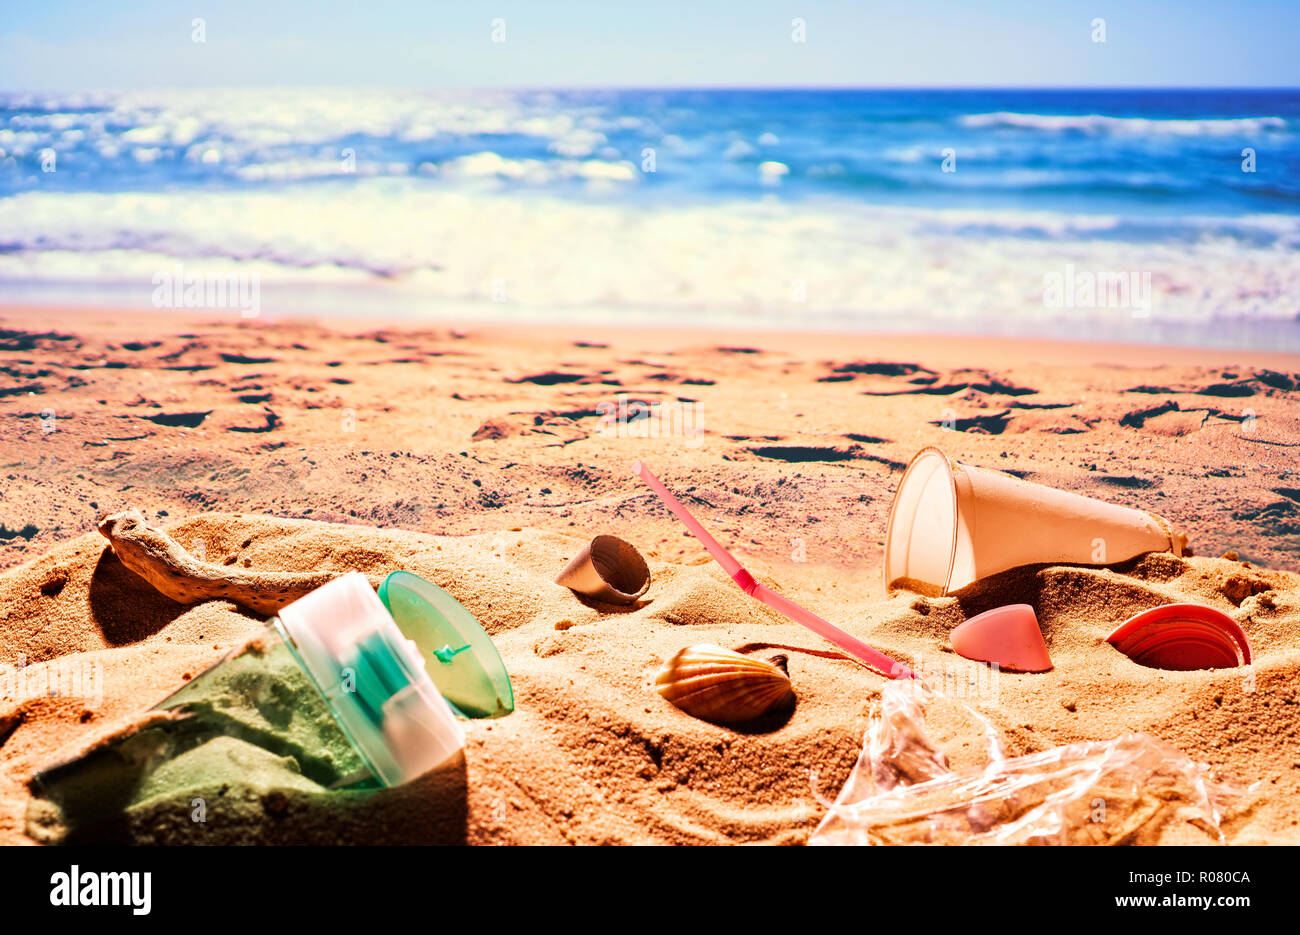 Desechos de plástico contamina una maravillosa playa de arena Foto de stock